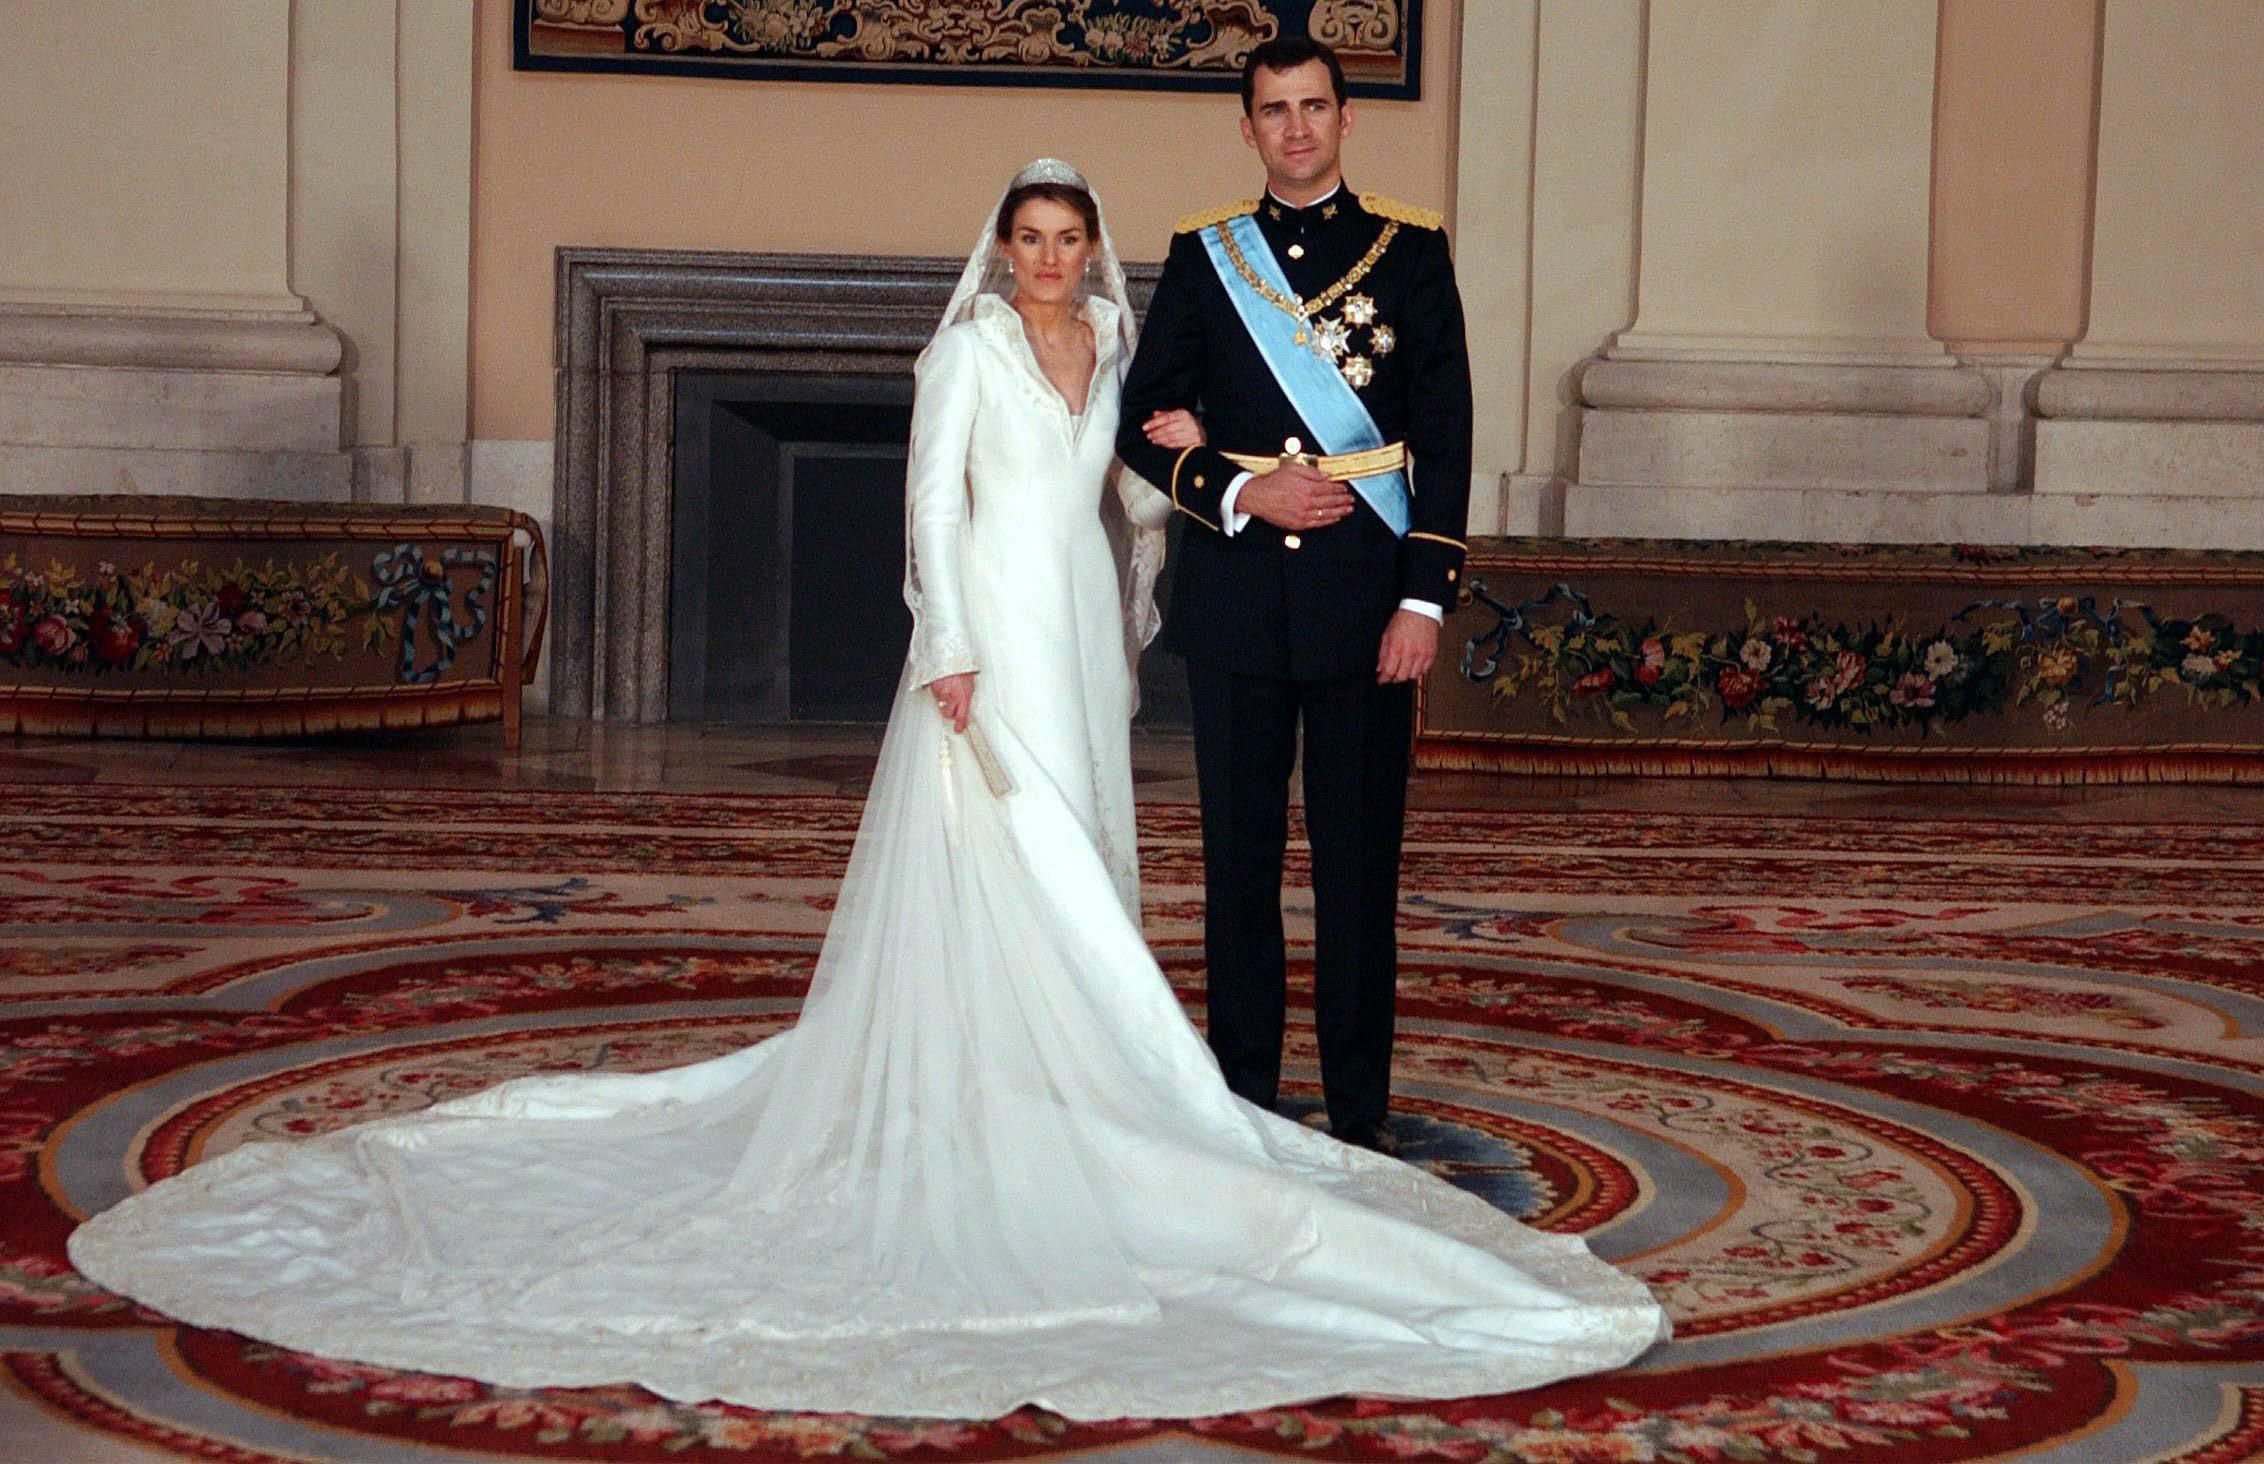 Il matrimonio del principe Felipe con la moglie Letizia Ortiz (Infophoto)